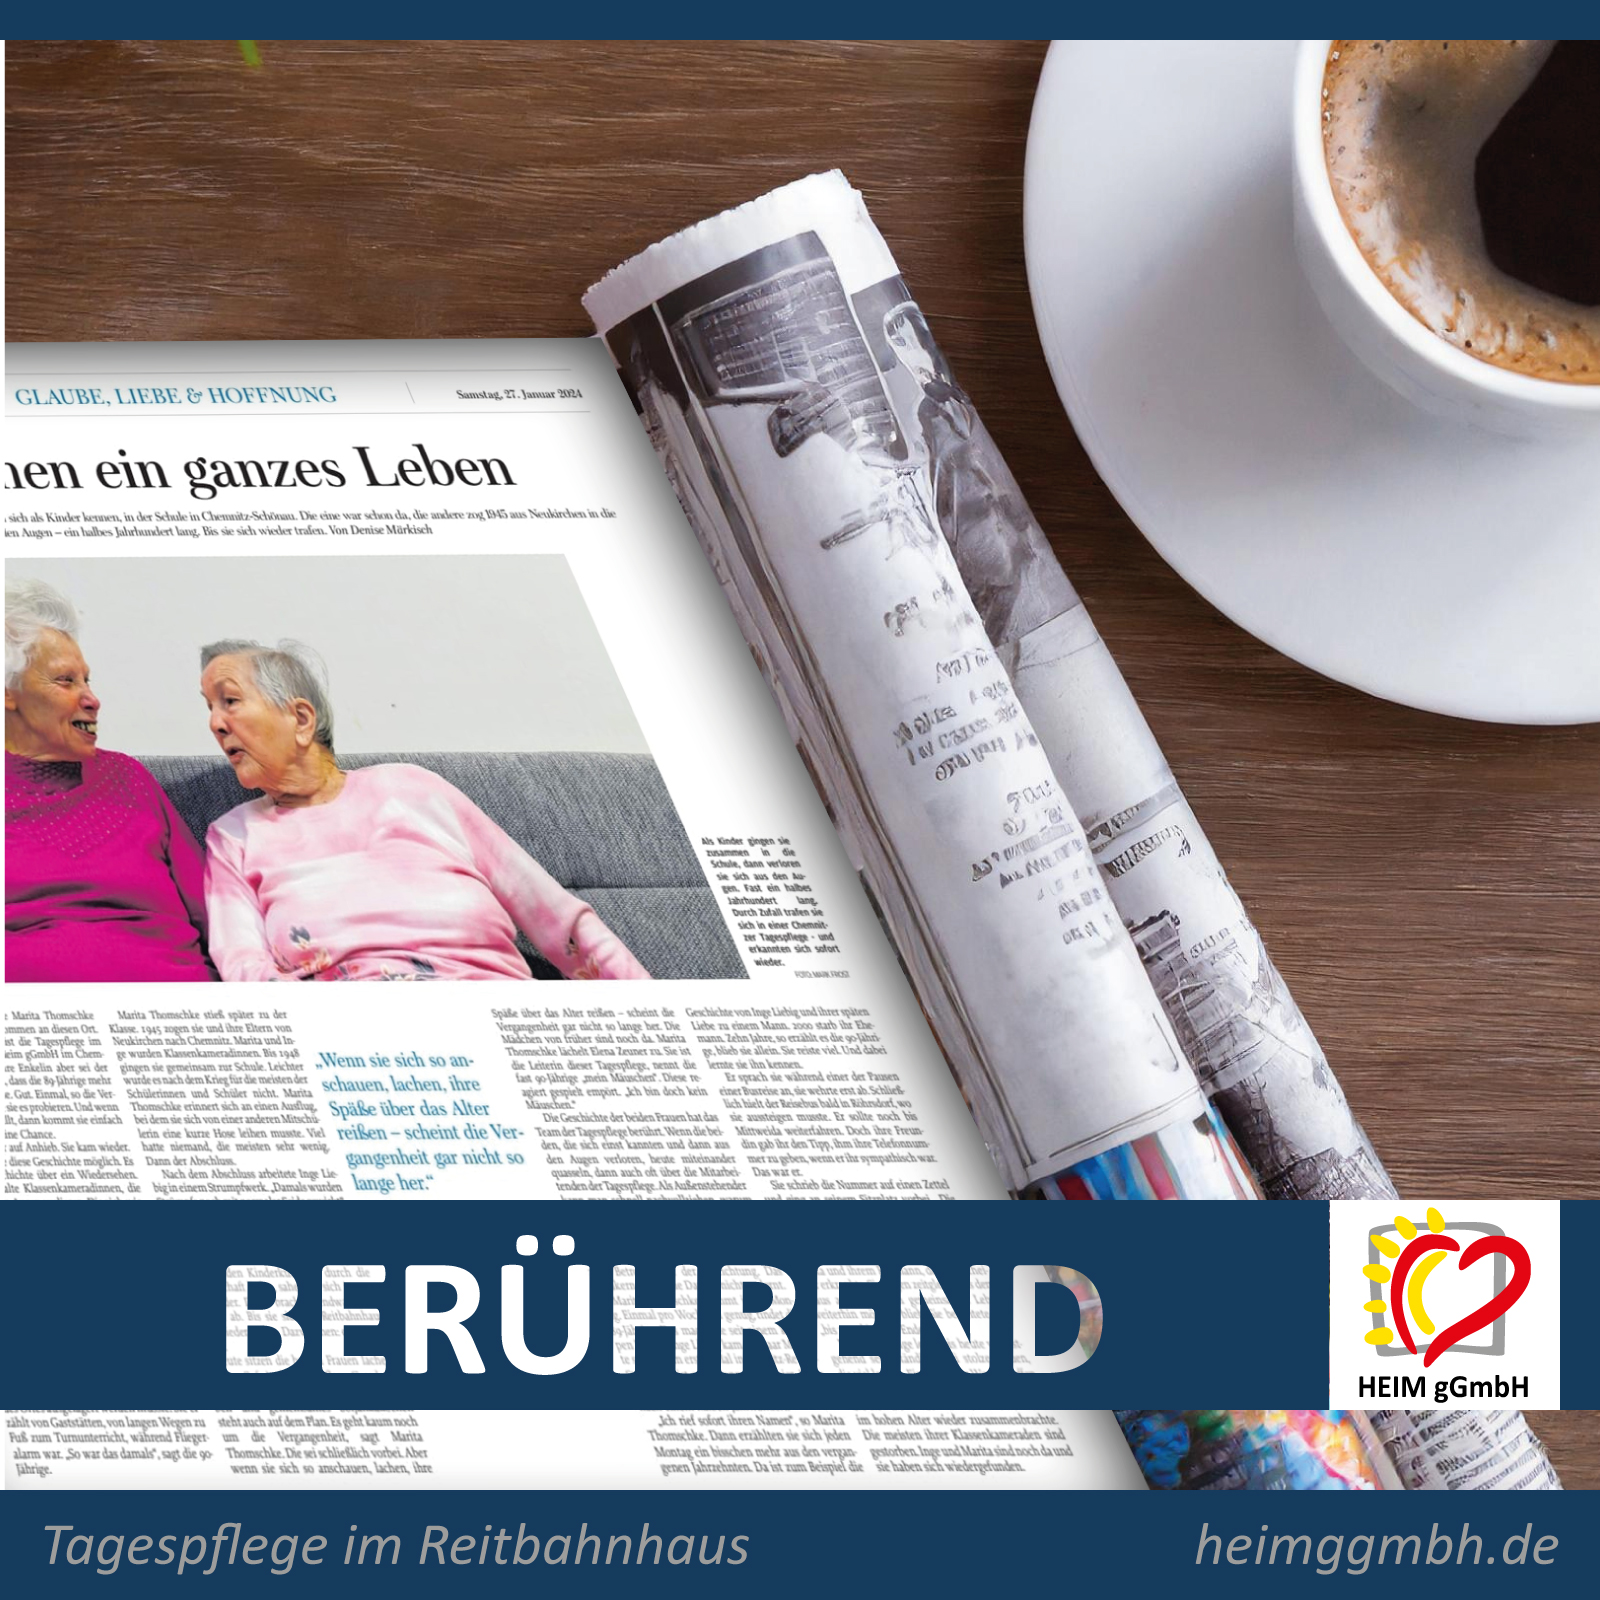 Eine berührende Geschichte: zwei alte Damen treffen sich nach einem halben Jahrhundert in der Tagespflege Reitbahnhaus Chemnitz wieder